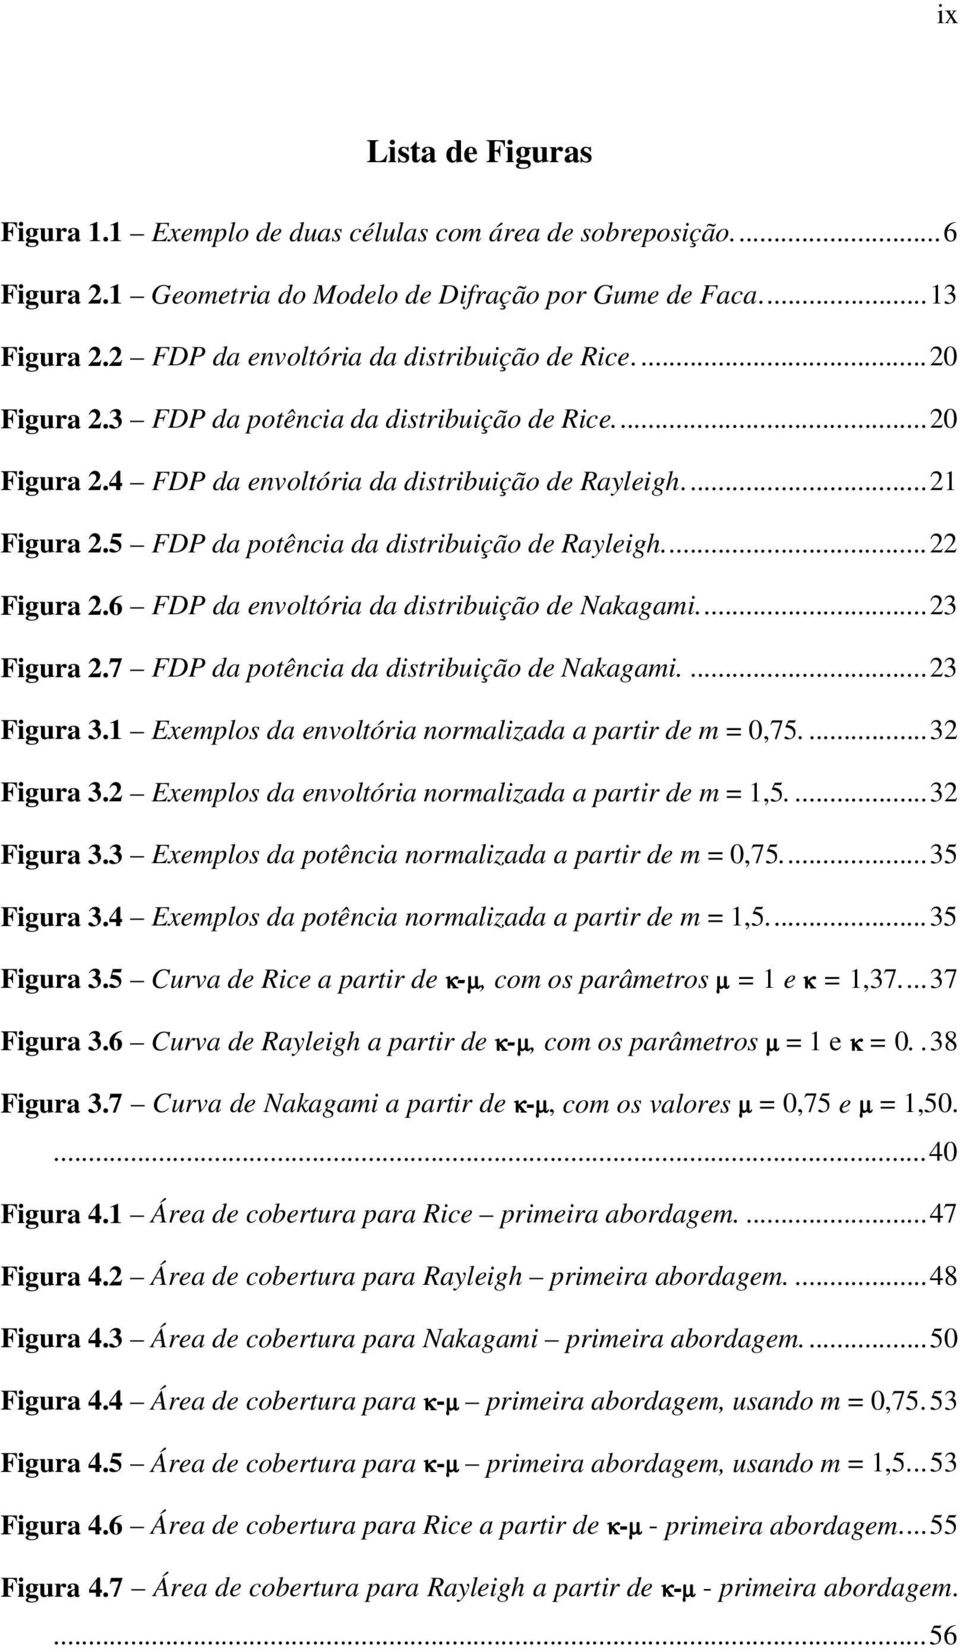 Exemplos da evoltóa omalzada a pat de m =,75....3 Fgua 3. Exemplos da evoltóa omalzada a pat de m =,5....3 Fgua 3.3 Exemplos da potêca omalzada a pat de m =,75...35 Fgua 3.